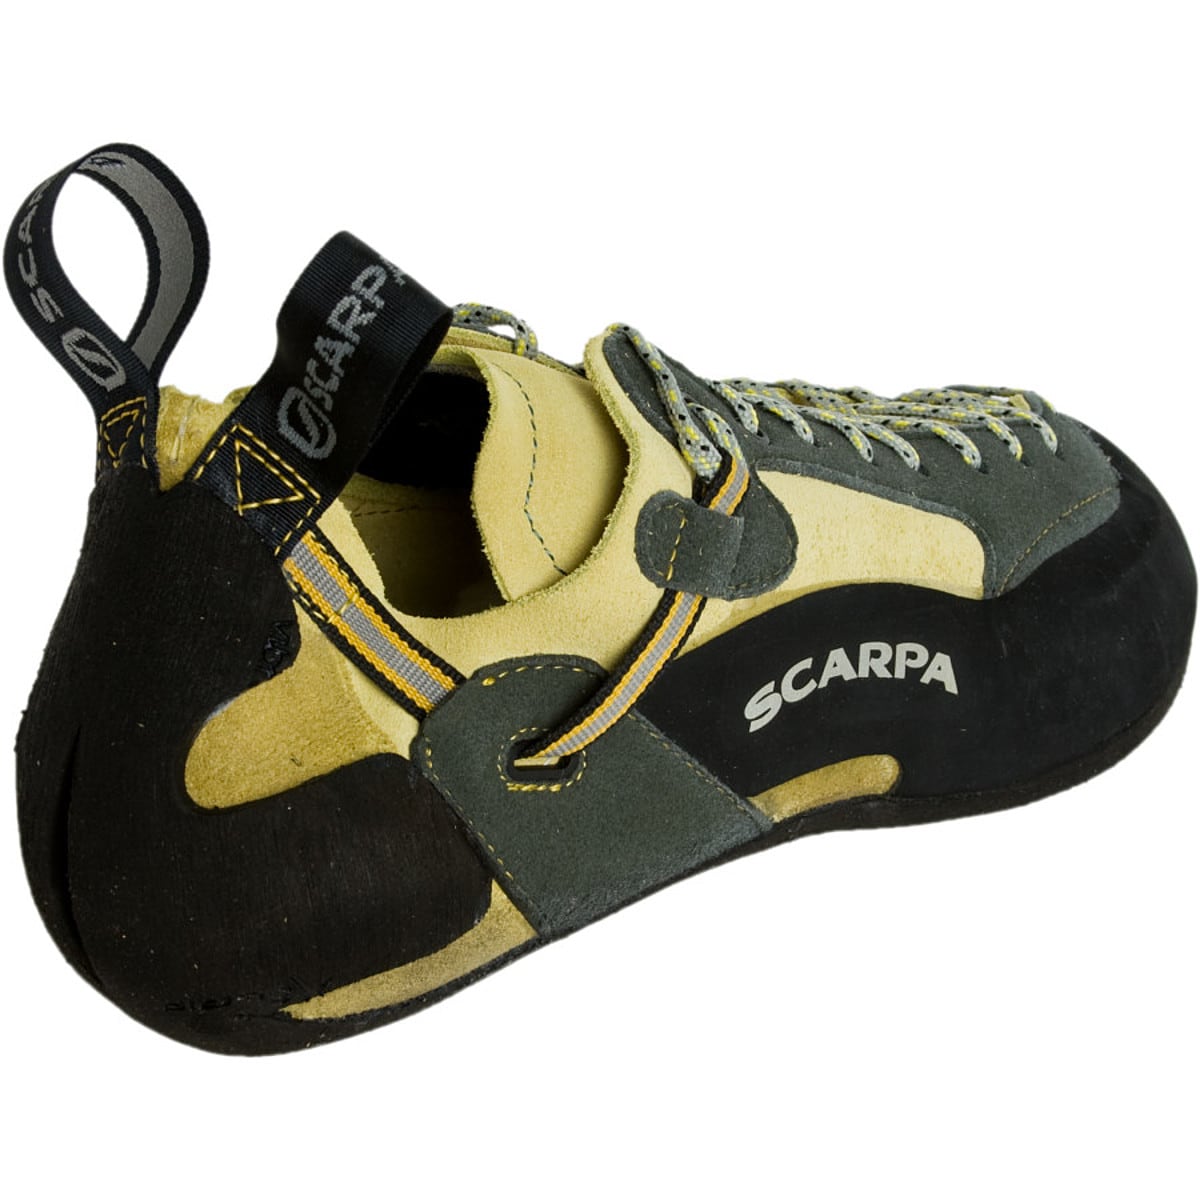 Scarpa Techno Climbing Shoes